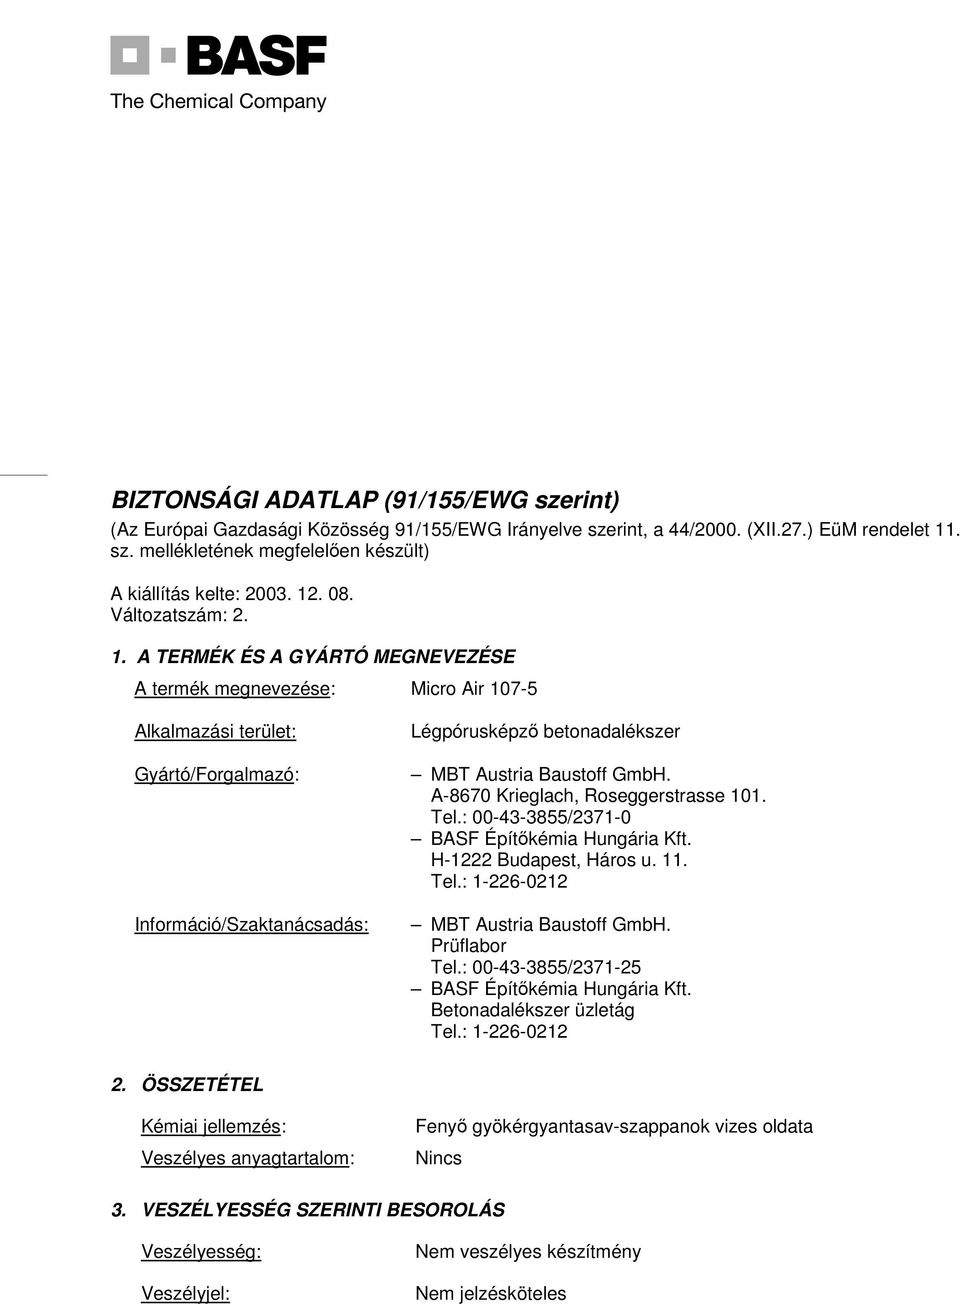 BIZTONSÁGI ADATLAP (91/155/EWG szerint) - PDF Ingyenes letöltés